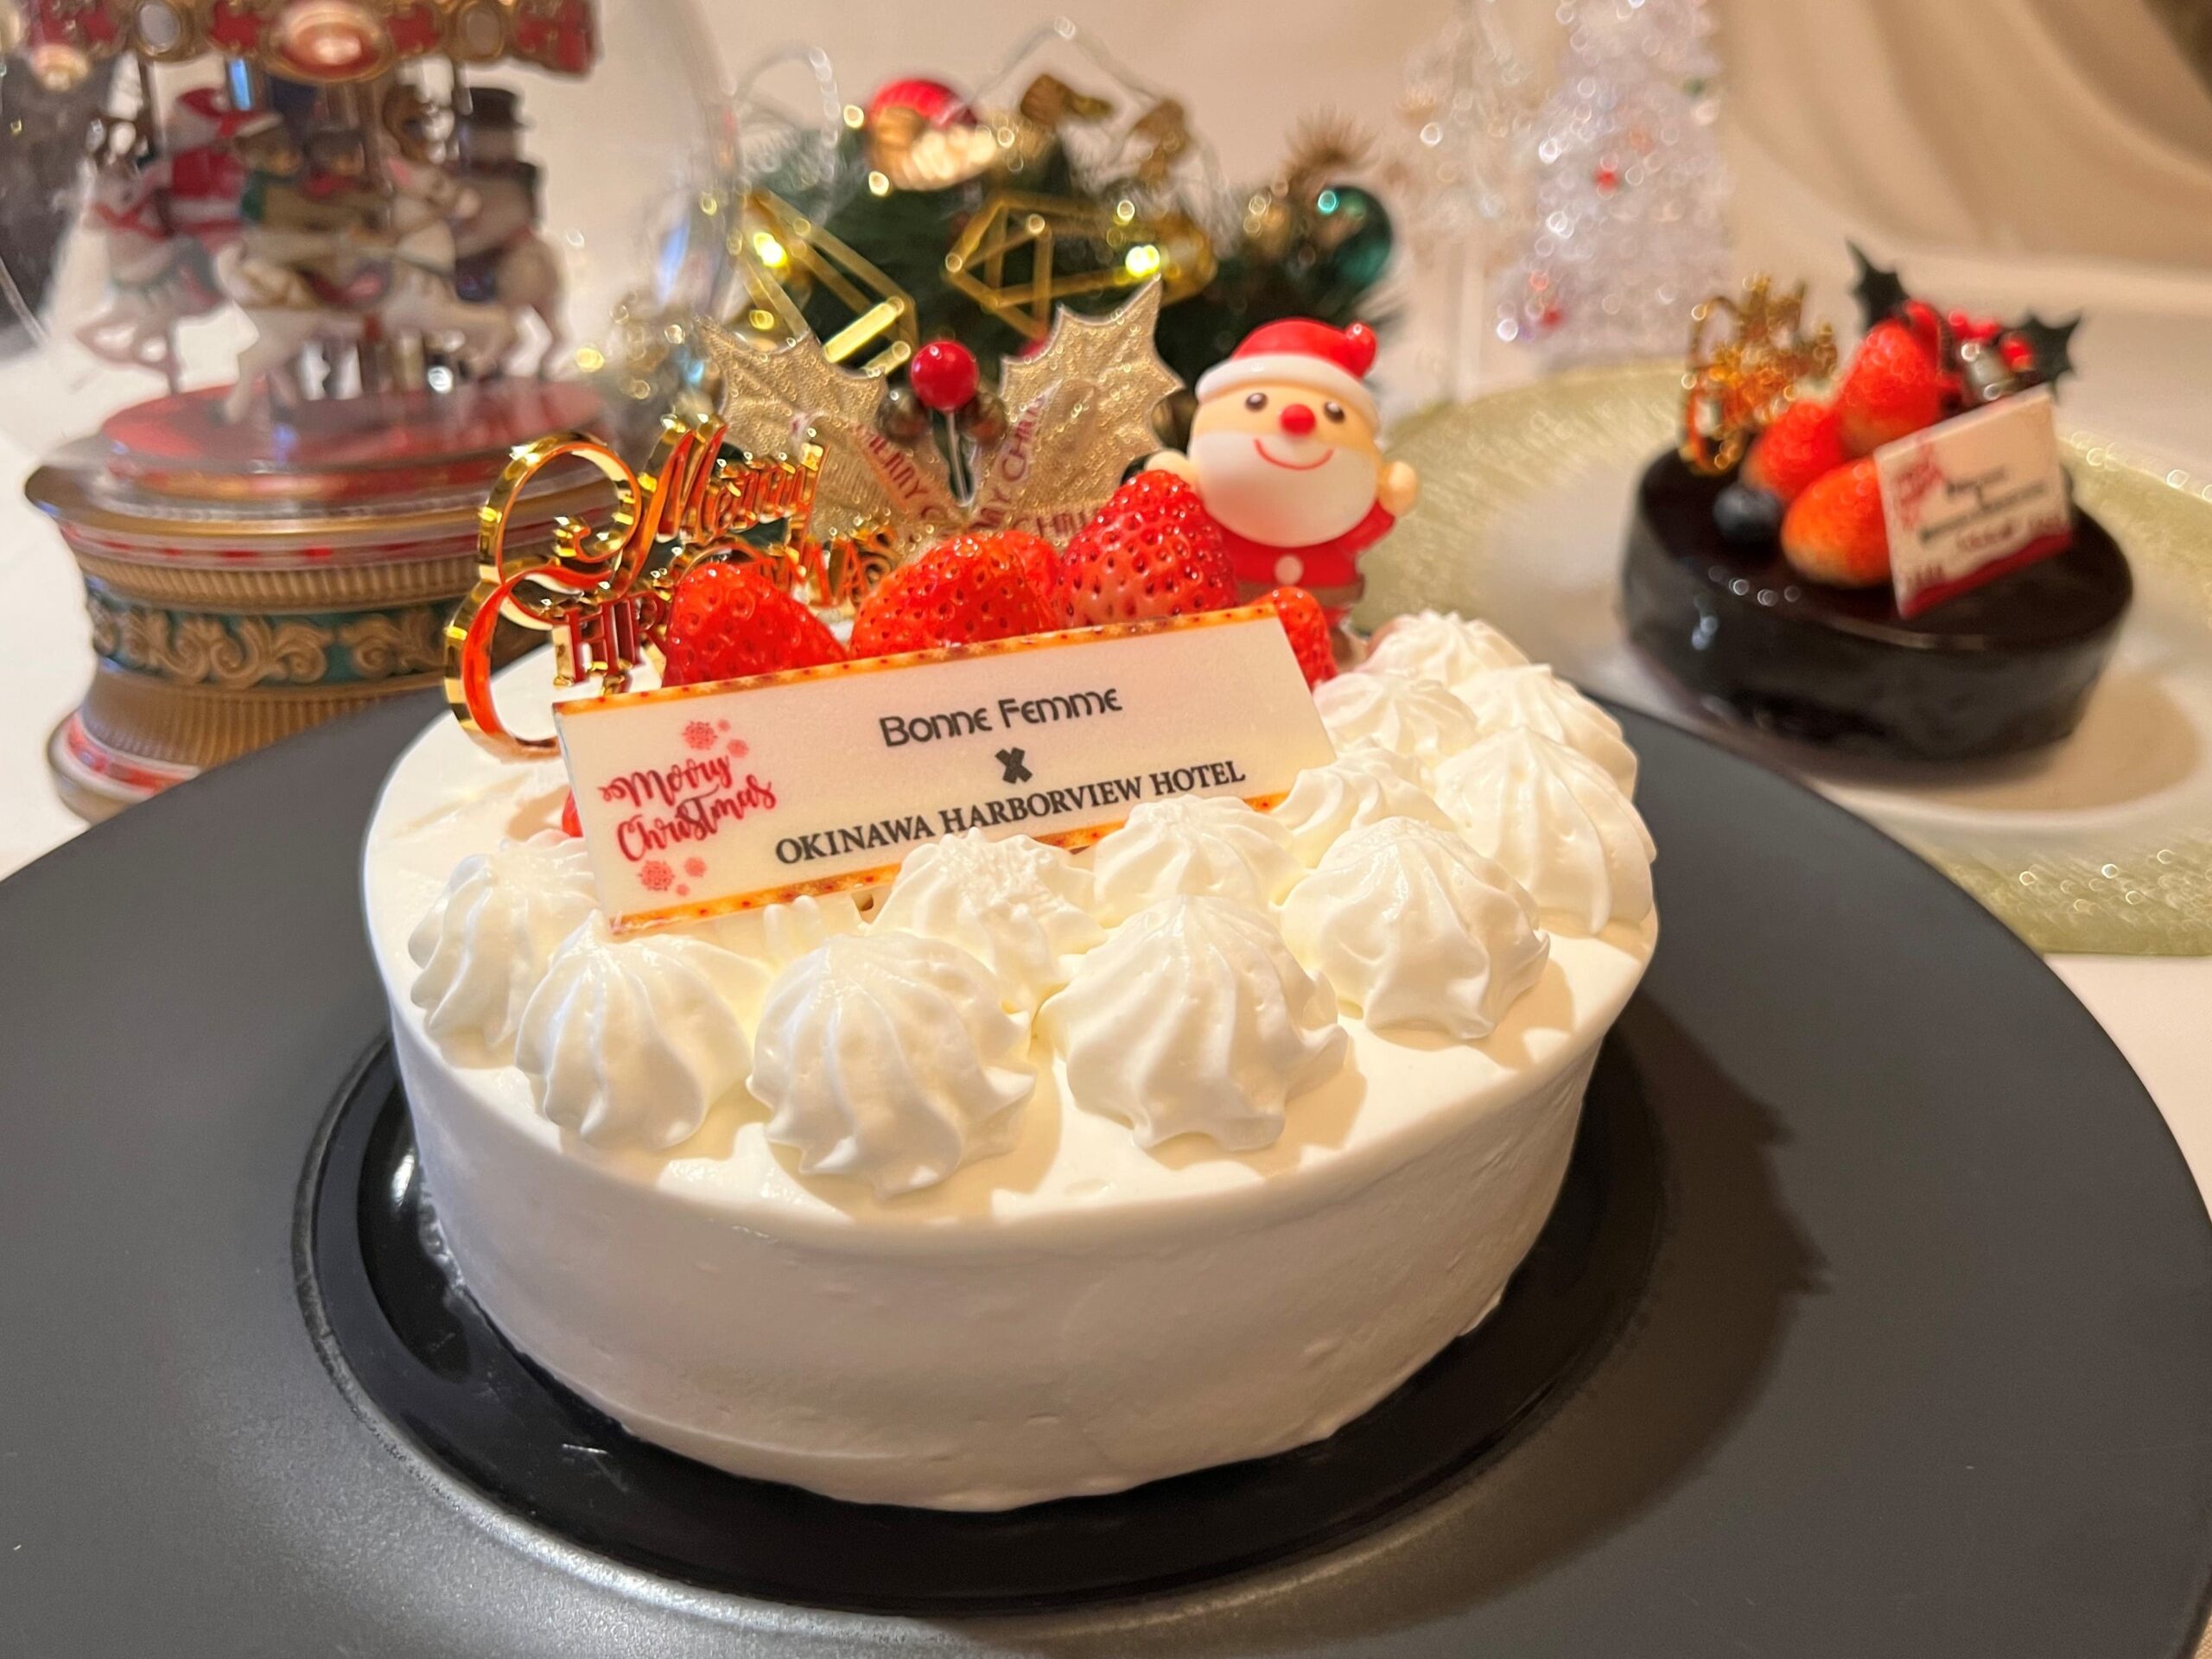 祝福を込めて贈る<br>沖縄ハーバービューホテルの<br>クリスマスケーキ＆ローストチキンのアイキャッチ画像